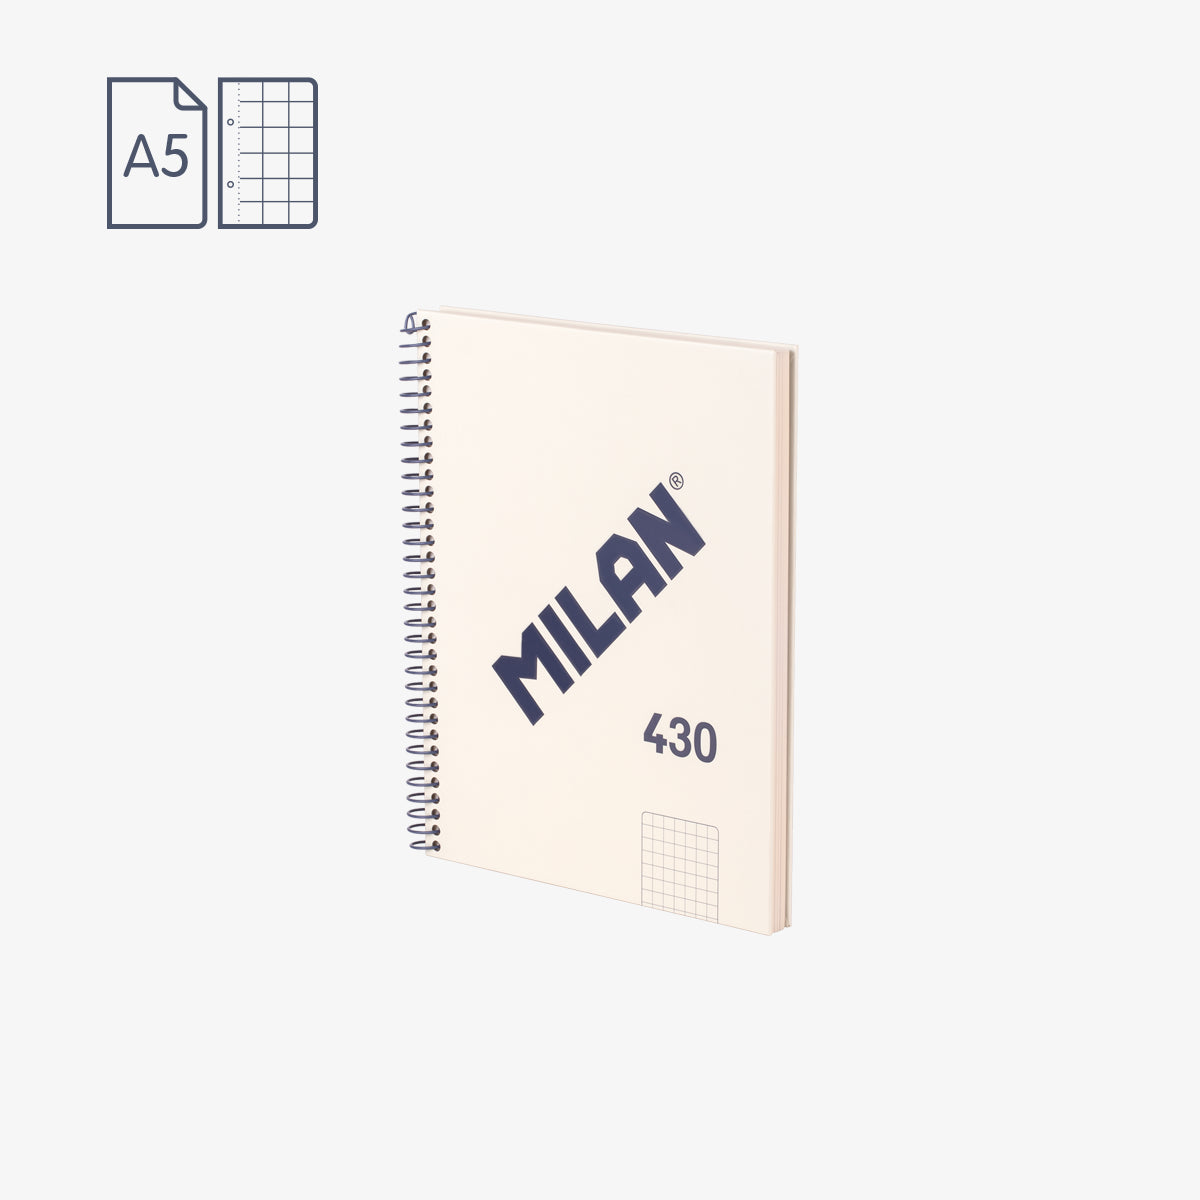 Cuaderno A5 con tapa dura, cuadrícula 5 x 5 mm, 80 hojas de 95 gr/m², 430 since 1918